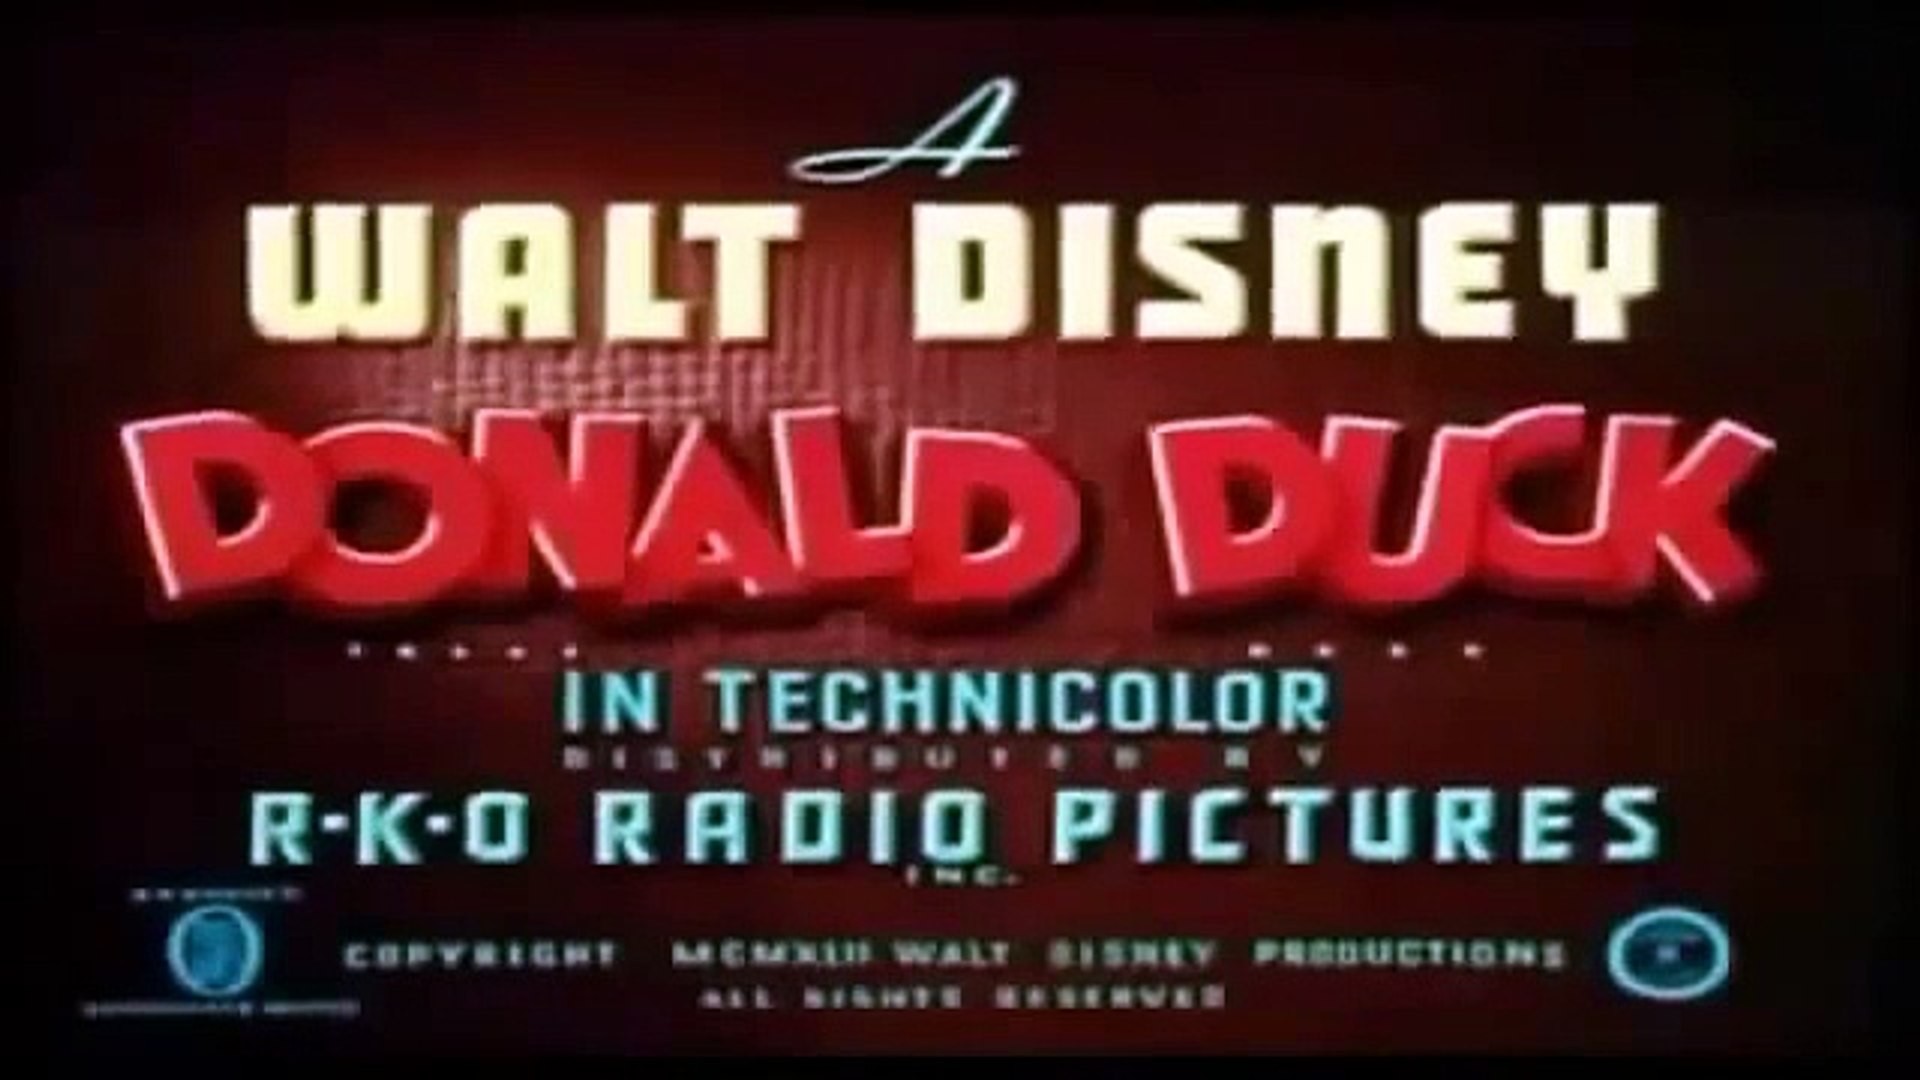 Donald E Tico E Teco - Quebrando O Galho (Out On A Limb) (1950) HQ on Vimeo